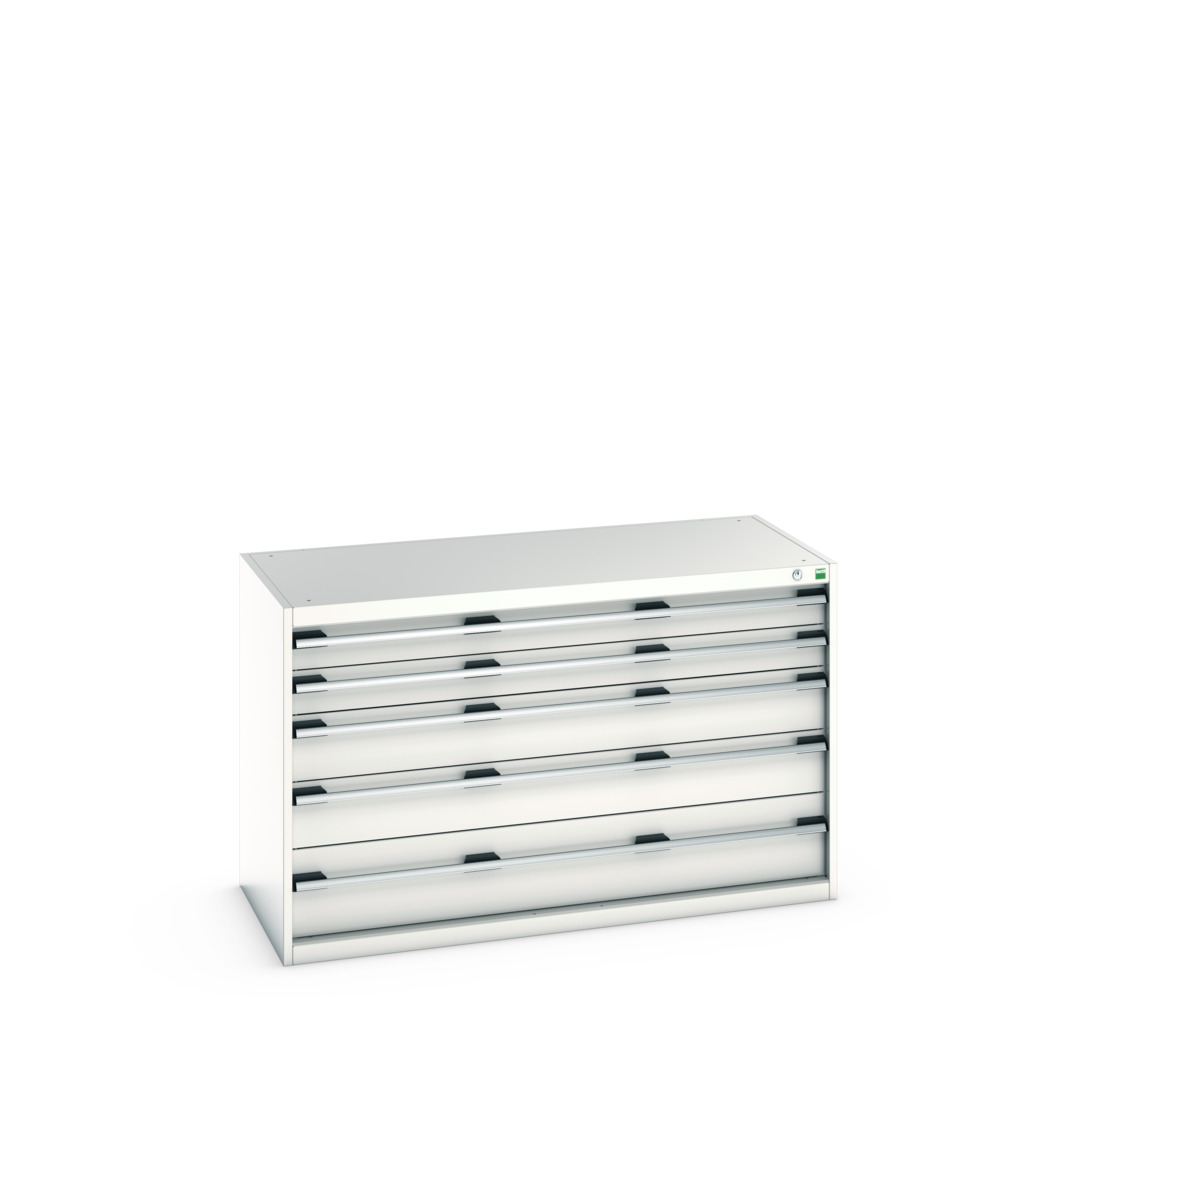 40022108.16V - cubio drawer cabinet